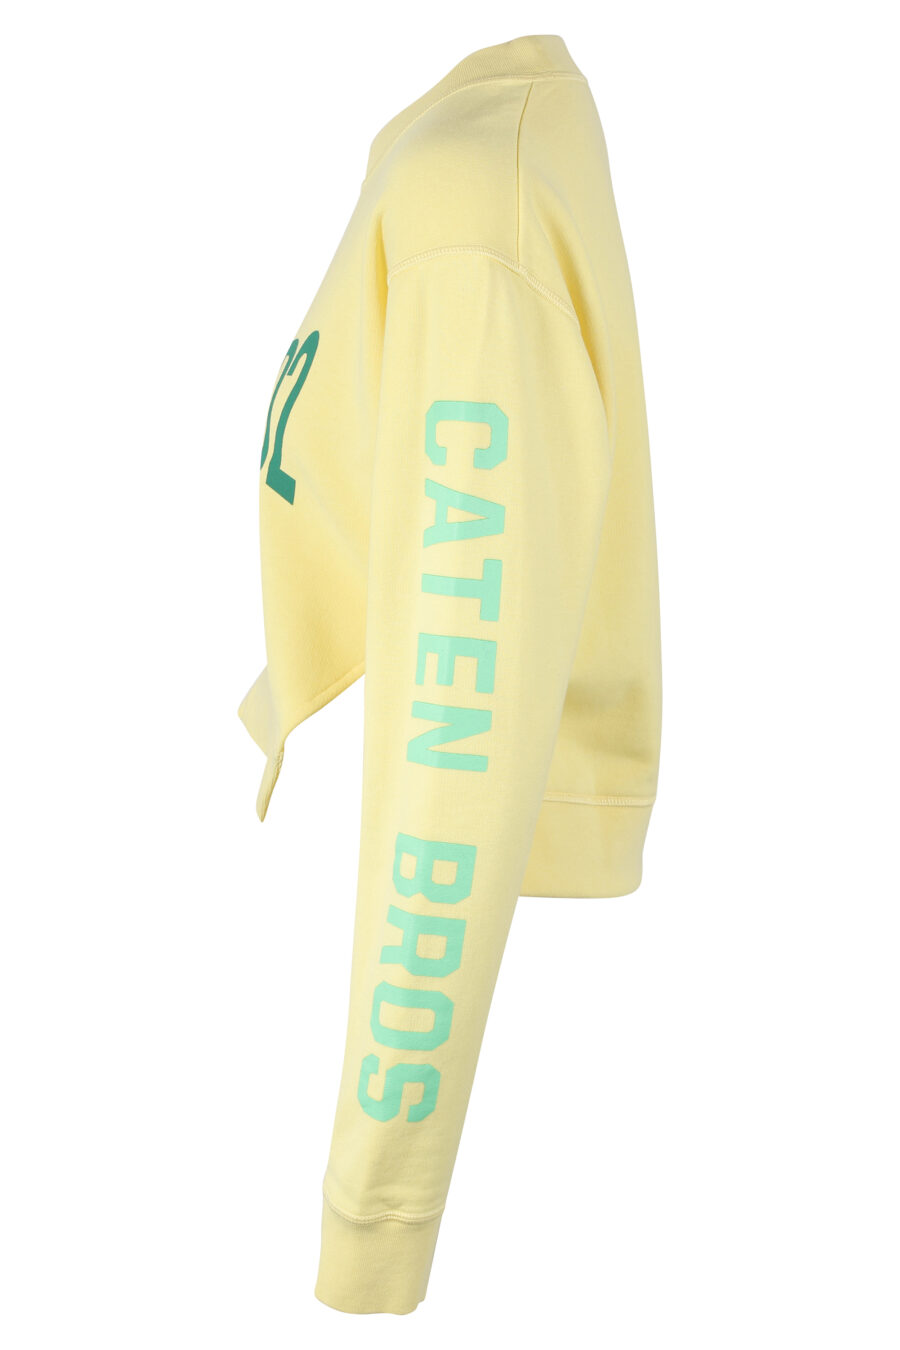 Gelbes Sweatshirt mit grünem Maxilogo und Text auf den Ärmeln - IMG 9778